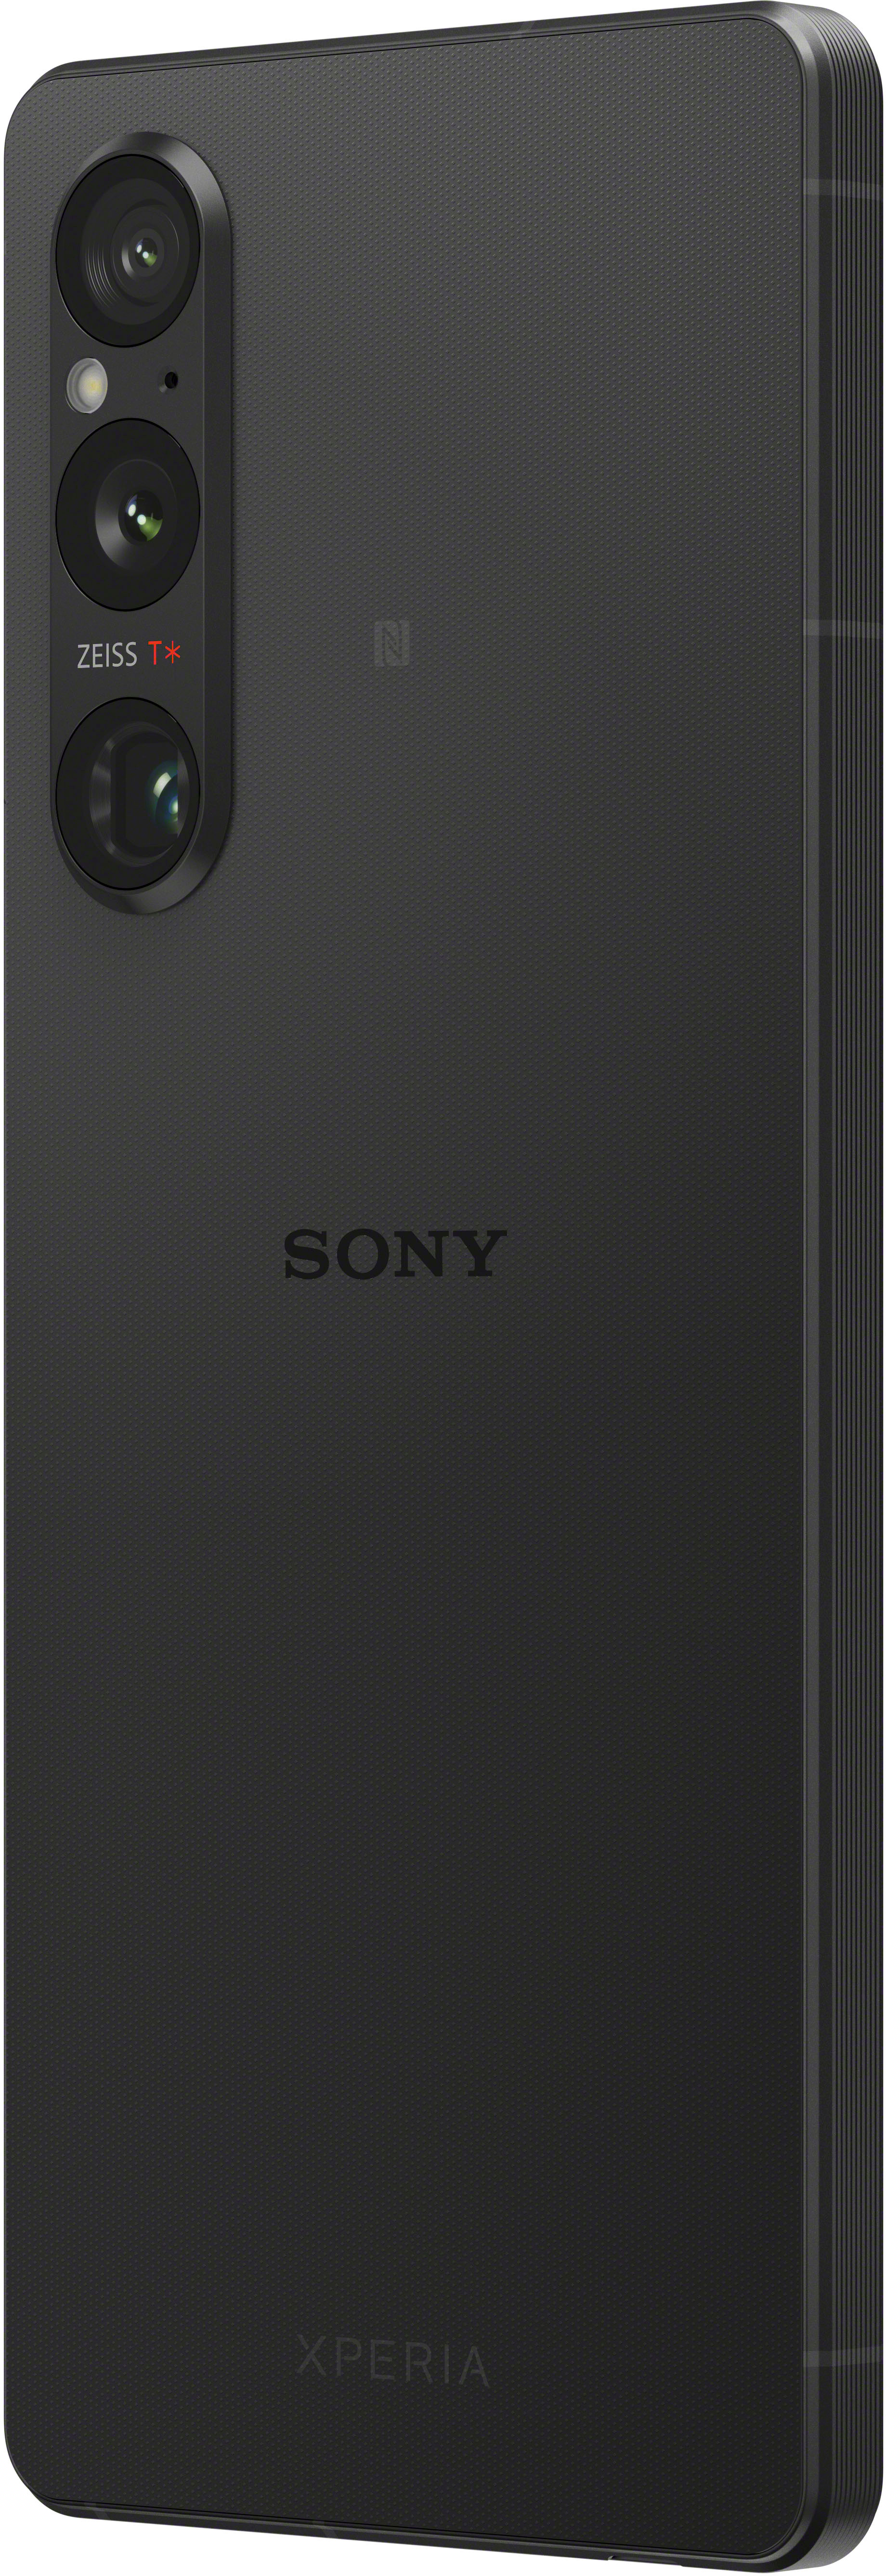 V Black (Unlocked) Sony Xperia 5G 1 - 256GB Buy XQDQ62/B Best